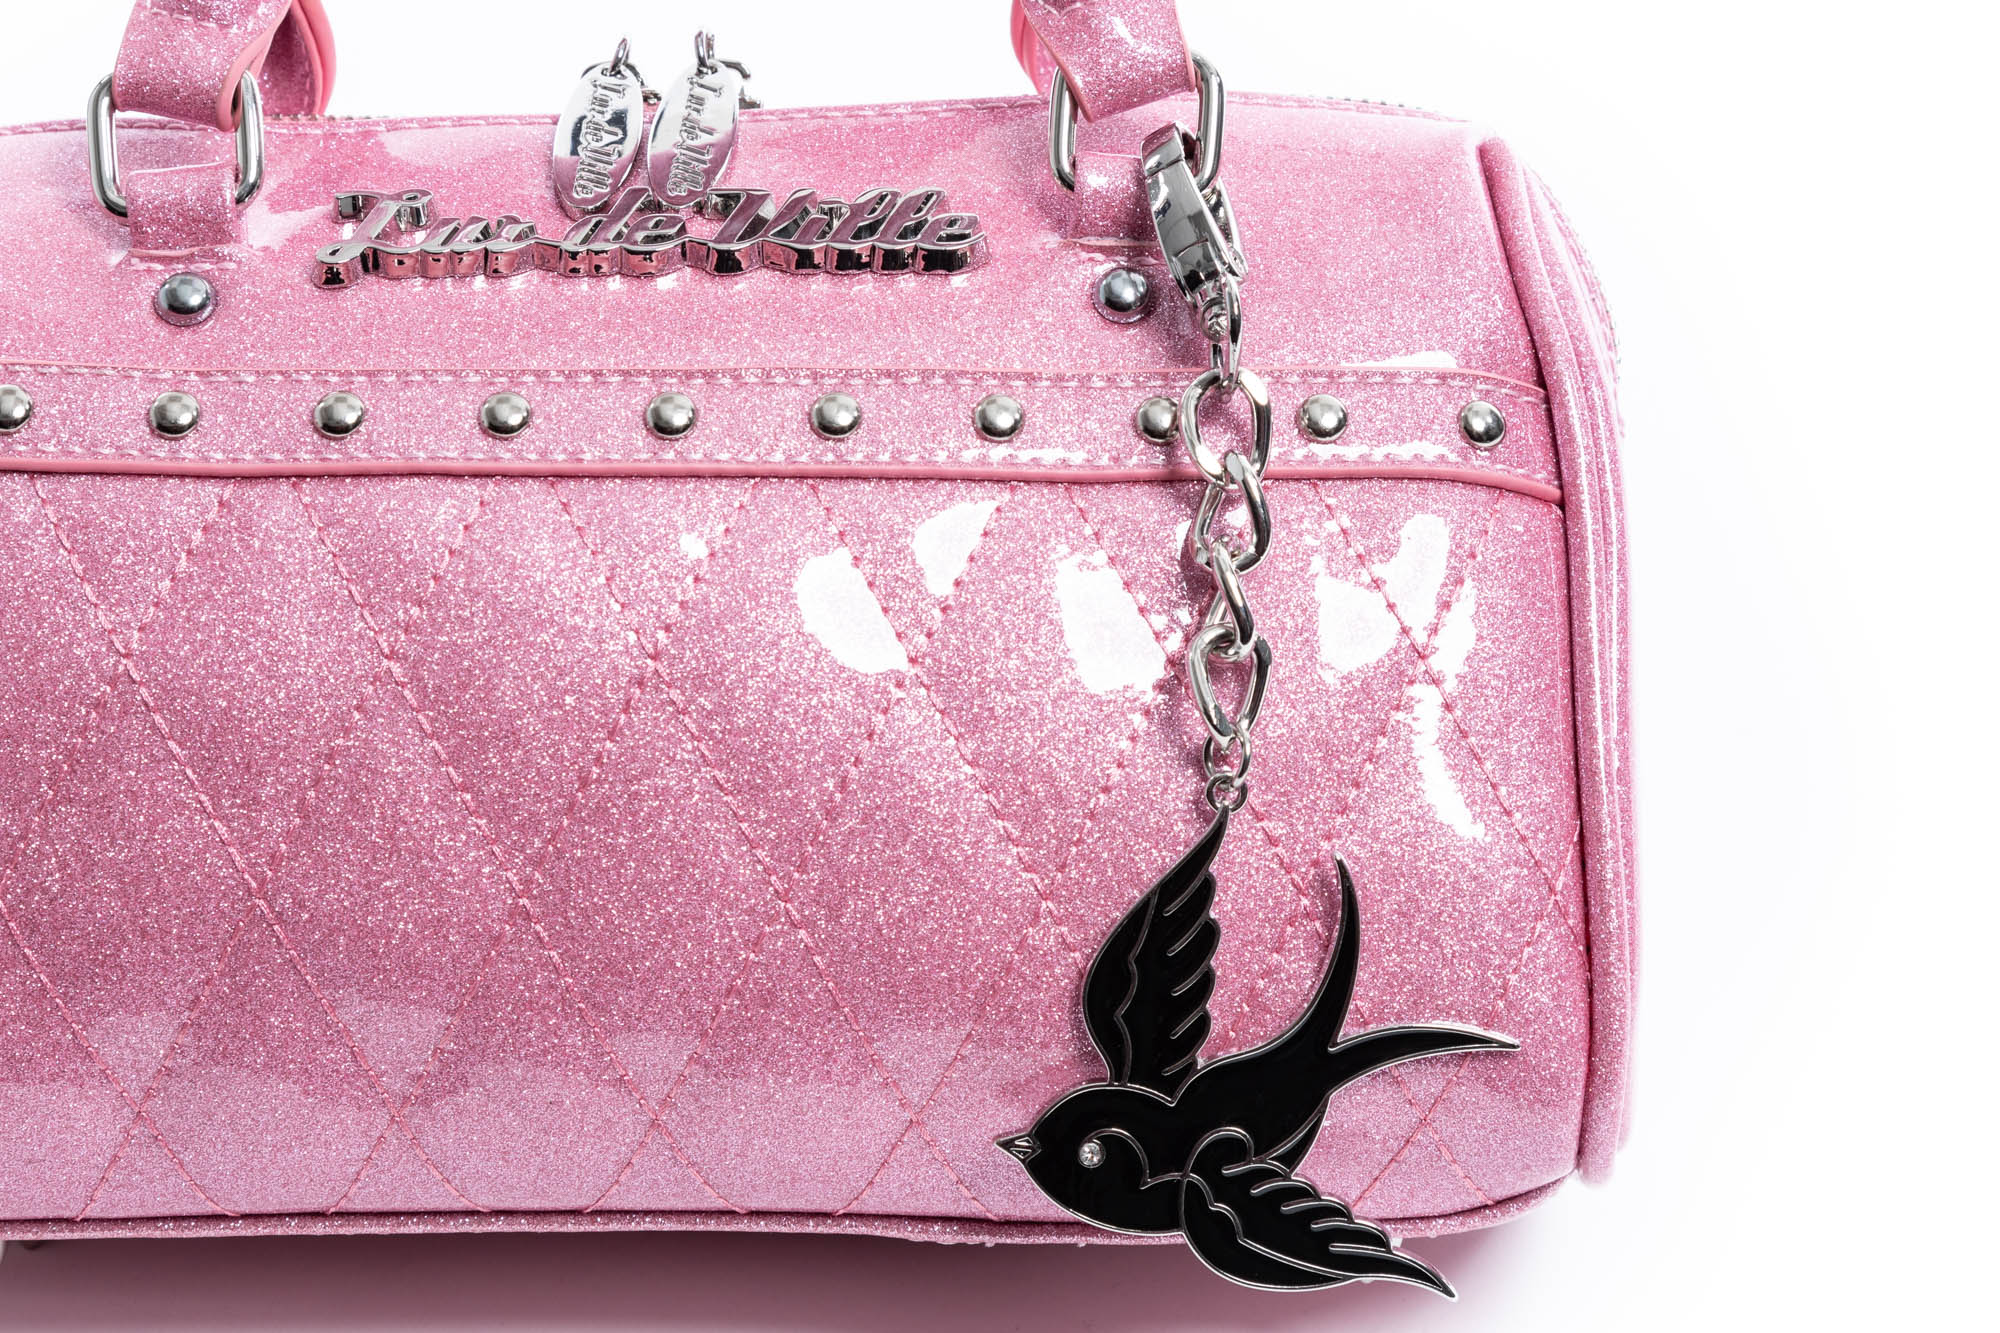 Lux De Ville Bags & Handbags for Women for sale